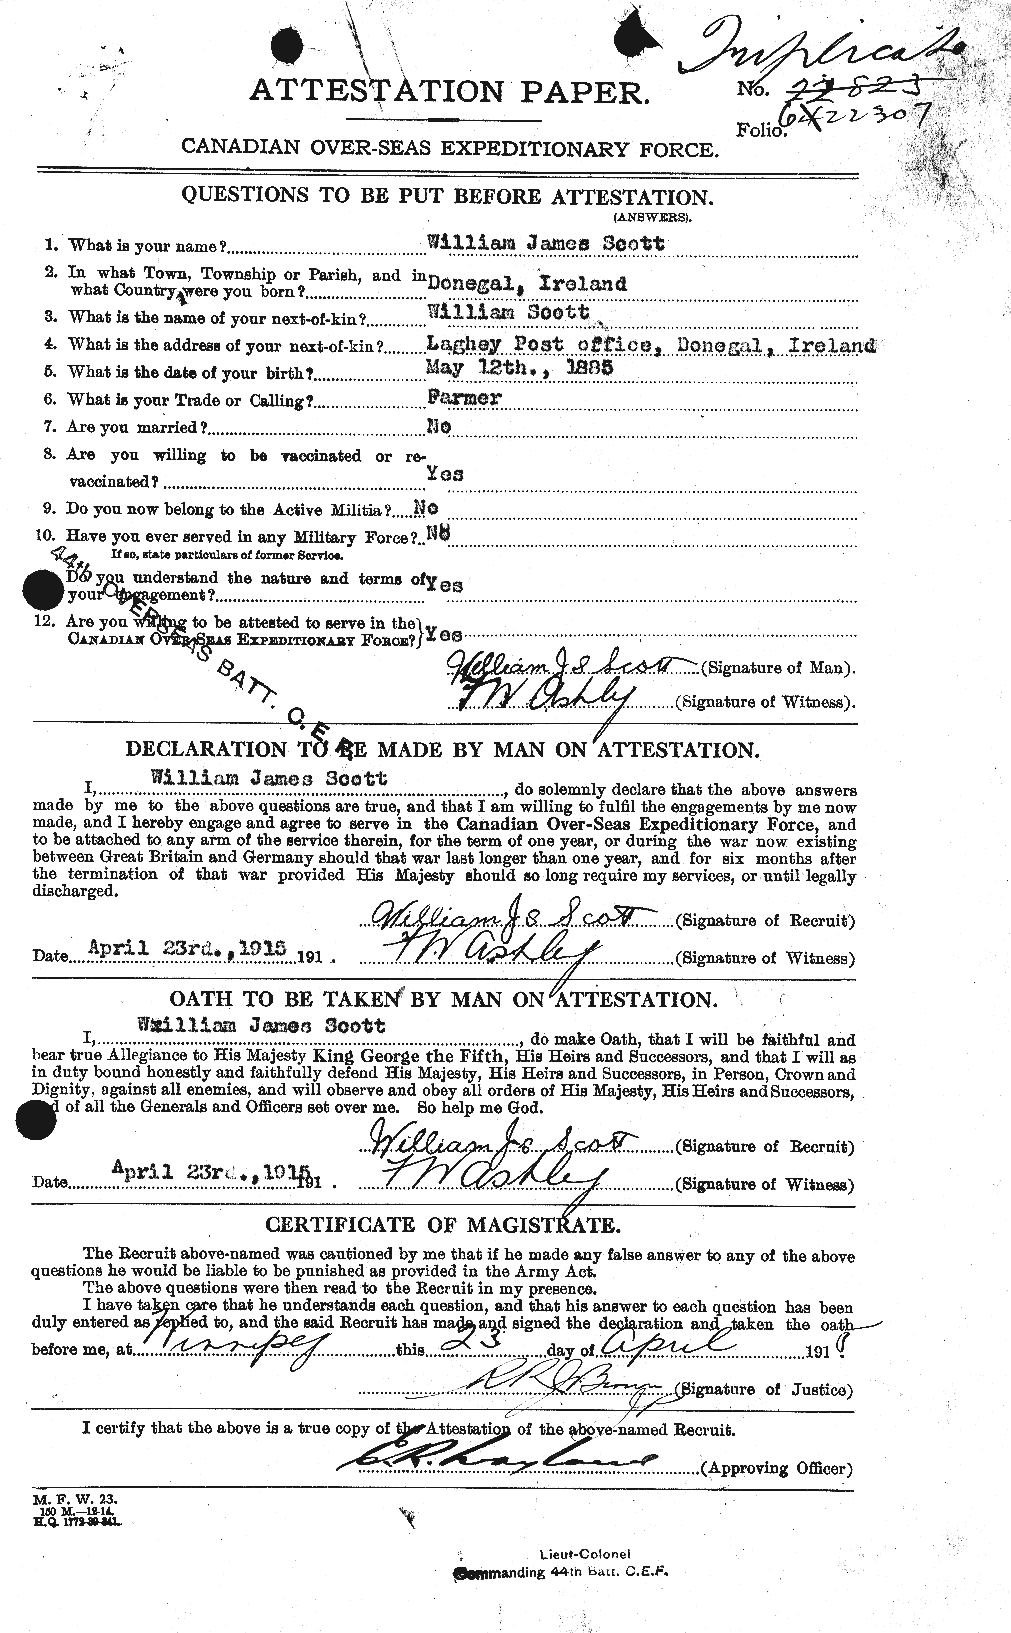 Dossiers du Personnel de la Première Guerre mondiale - CEC 086770a